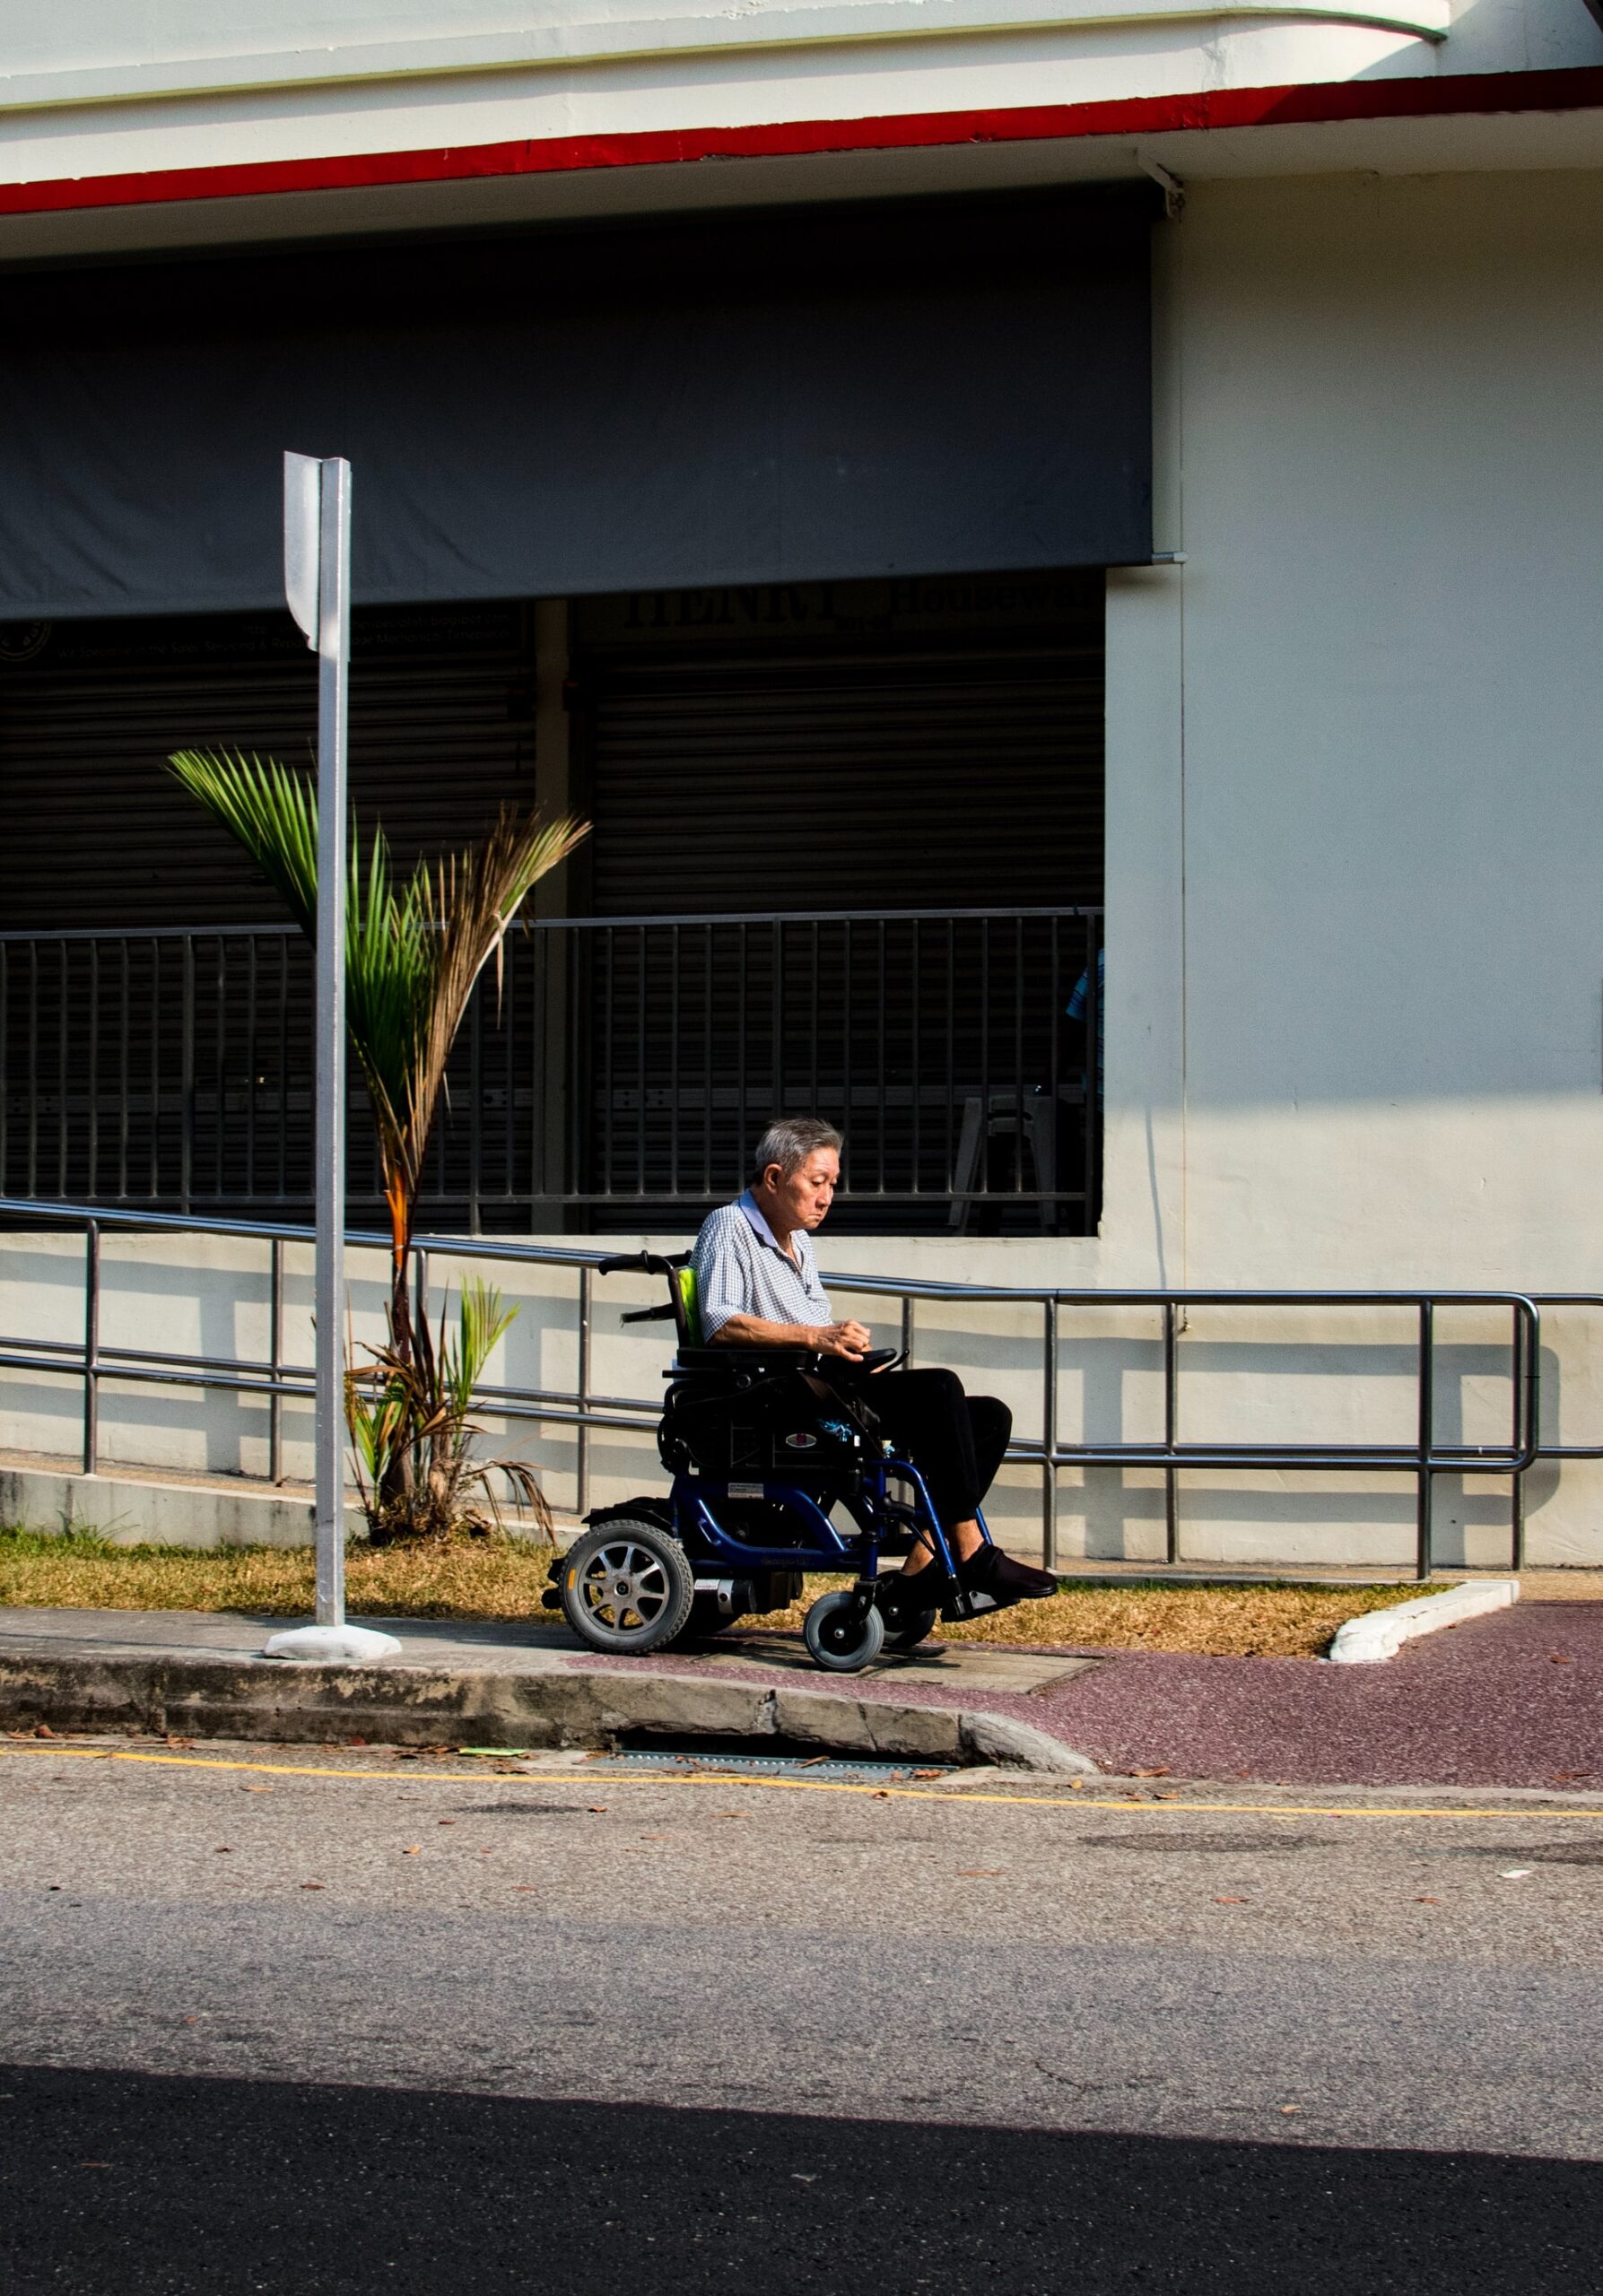 repetitive problem, no caregiver, man riding wheelchair